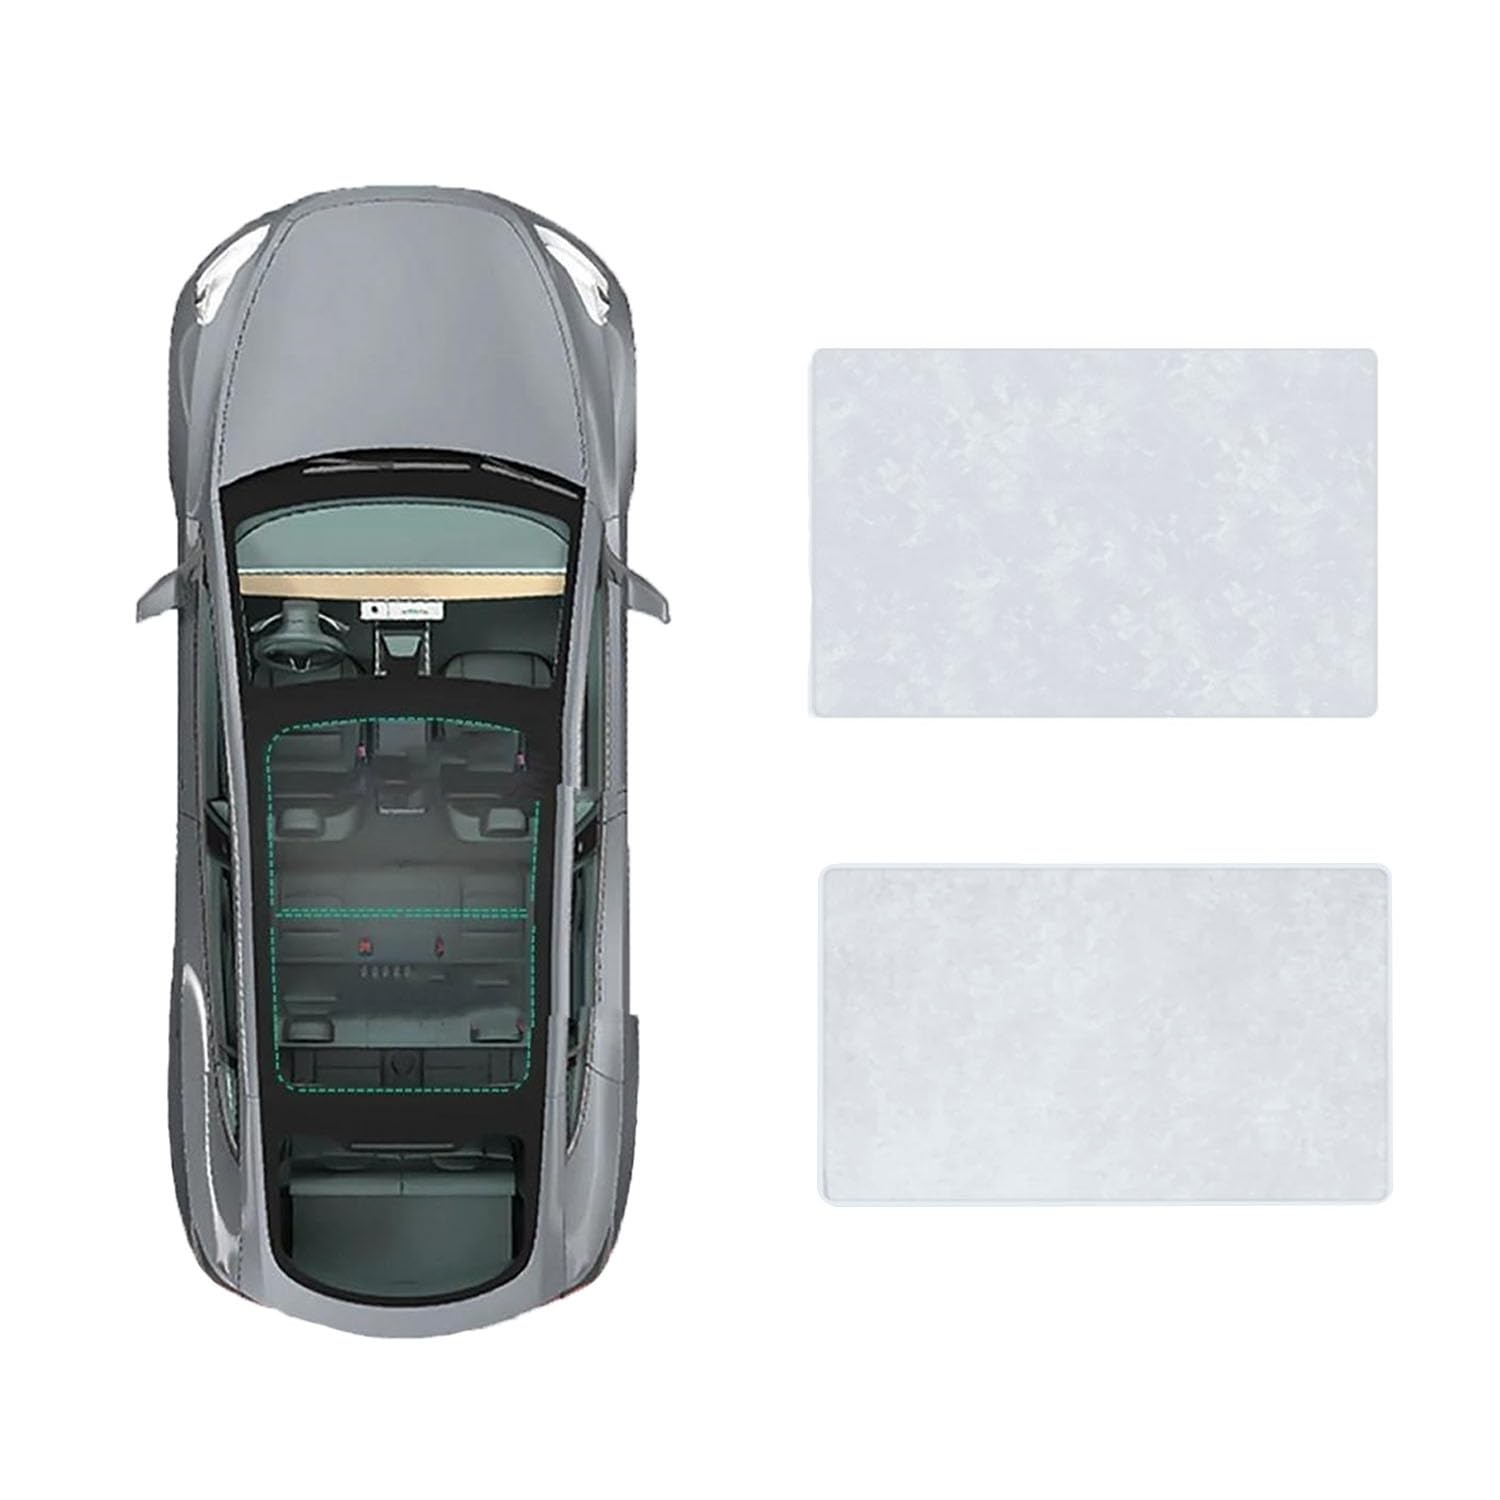 Auto Schiebedach Sonnenschirm Vorhang Für BMW X1 2010-2015,UV-Schutz Schattierung vorne Heckscheibe Sonnenschutz,B-Gray white Suede von JiAQen